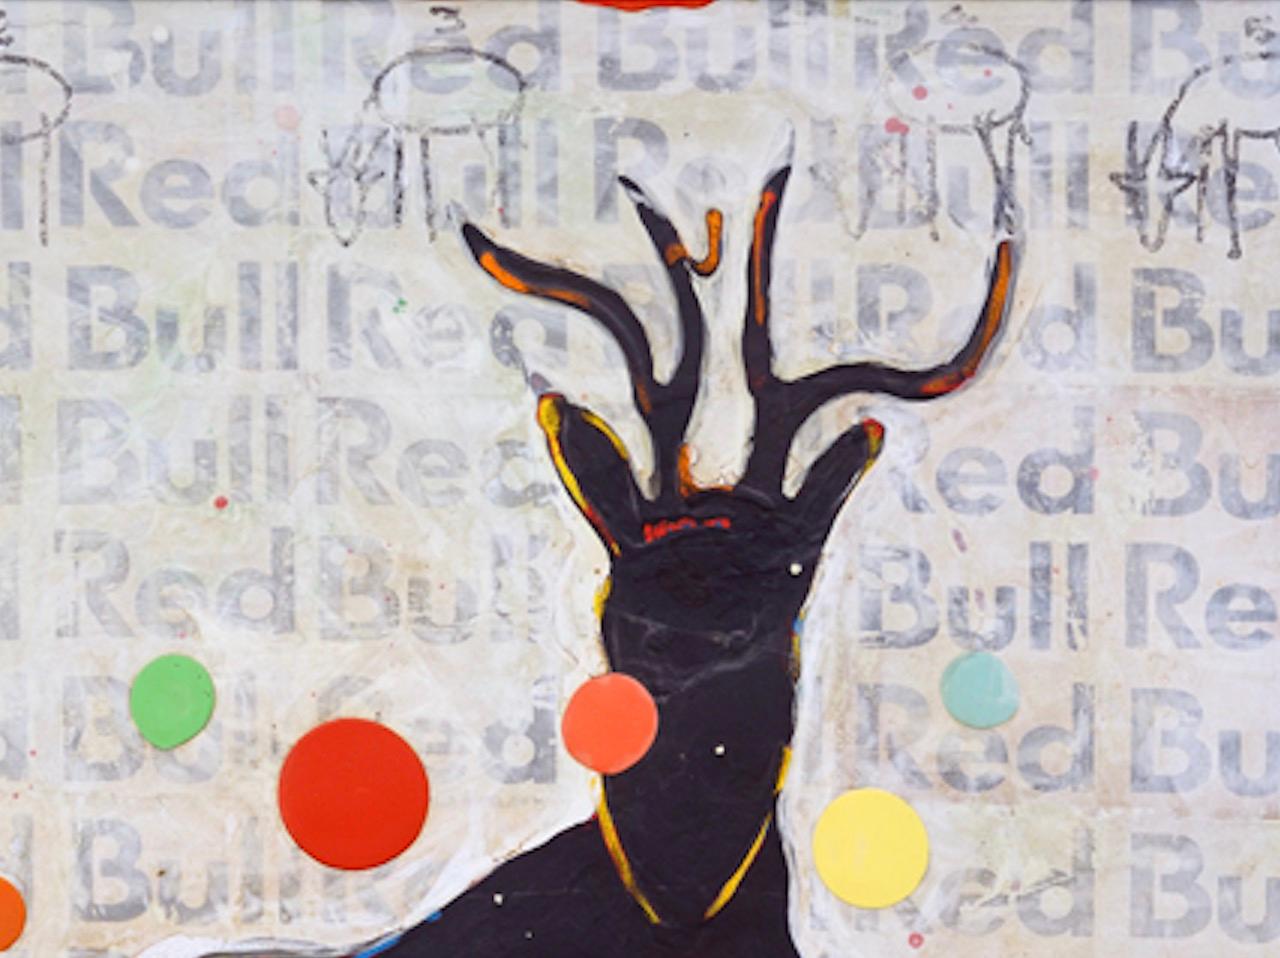 Die Gemälde von John Randall Nelson sind mit seiner eigenen persönlichen Sprache überzogen, die aus Mustern, Symbolen und Archetypen besteht, die vielleicht keinen wörtlichen Sinn ergeben, aber mit unterbewussten Assoziationen spielen. Seine Gemälde